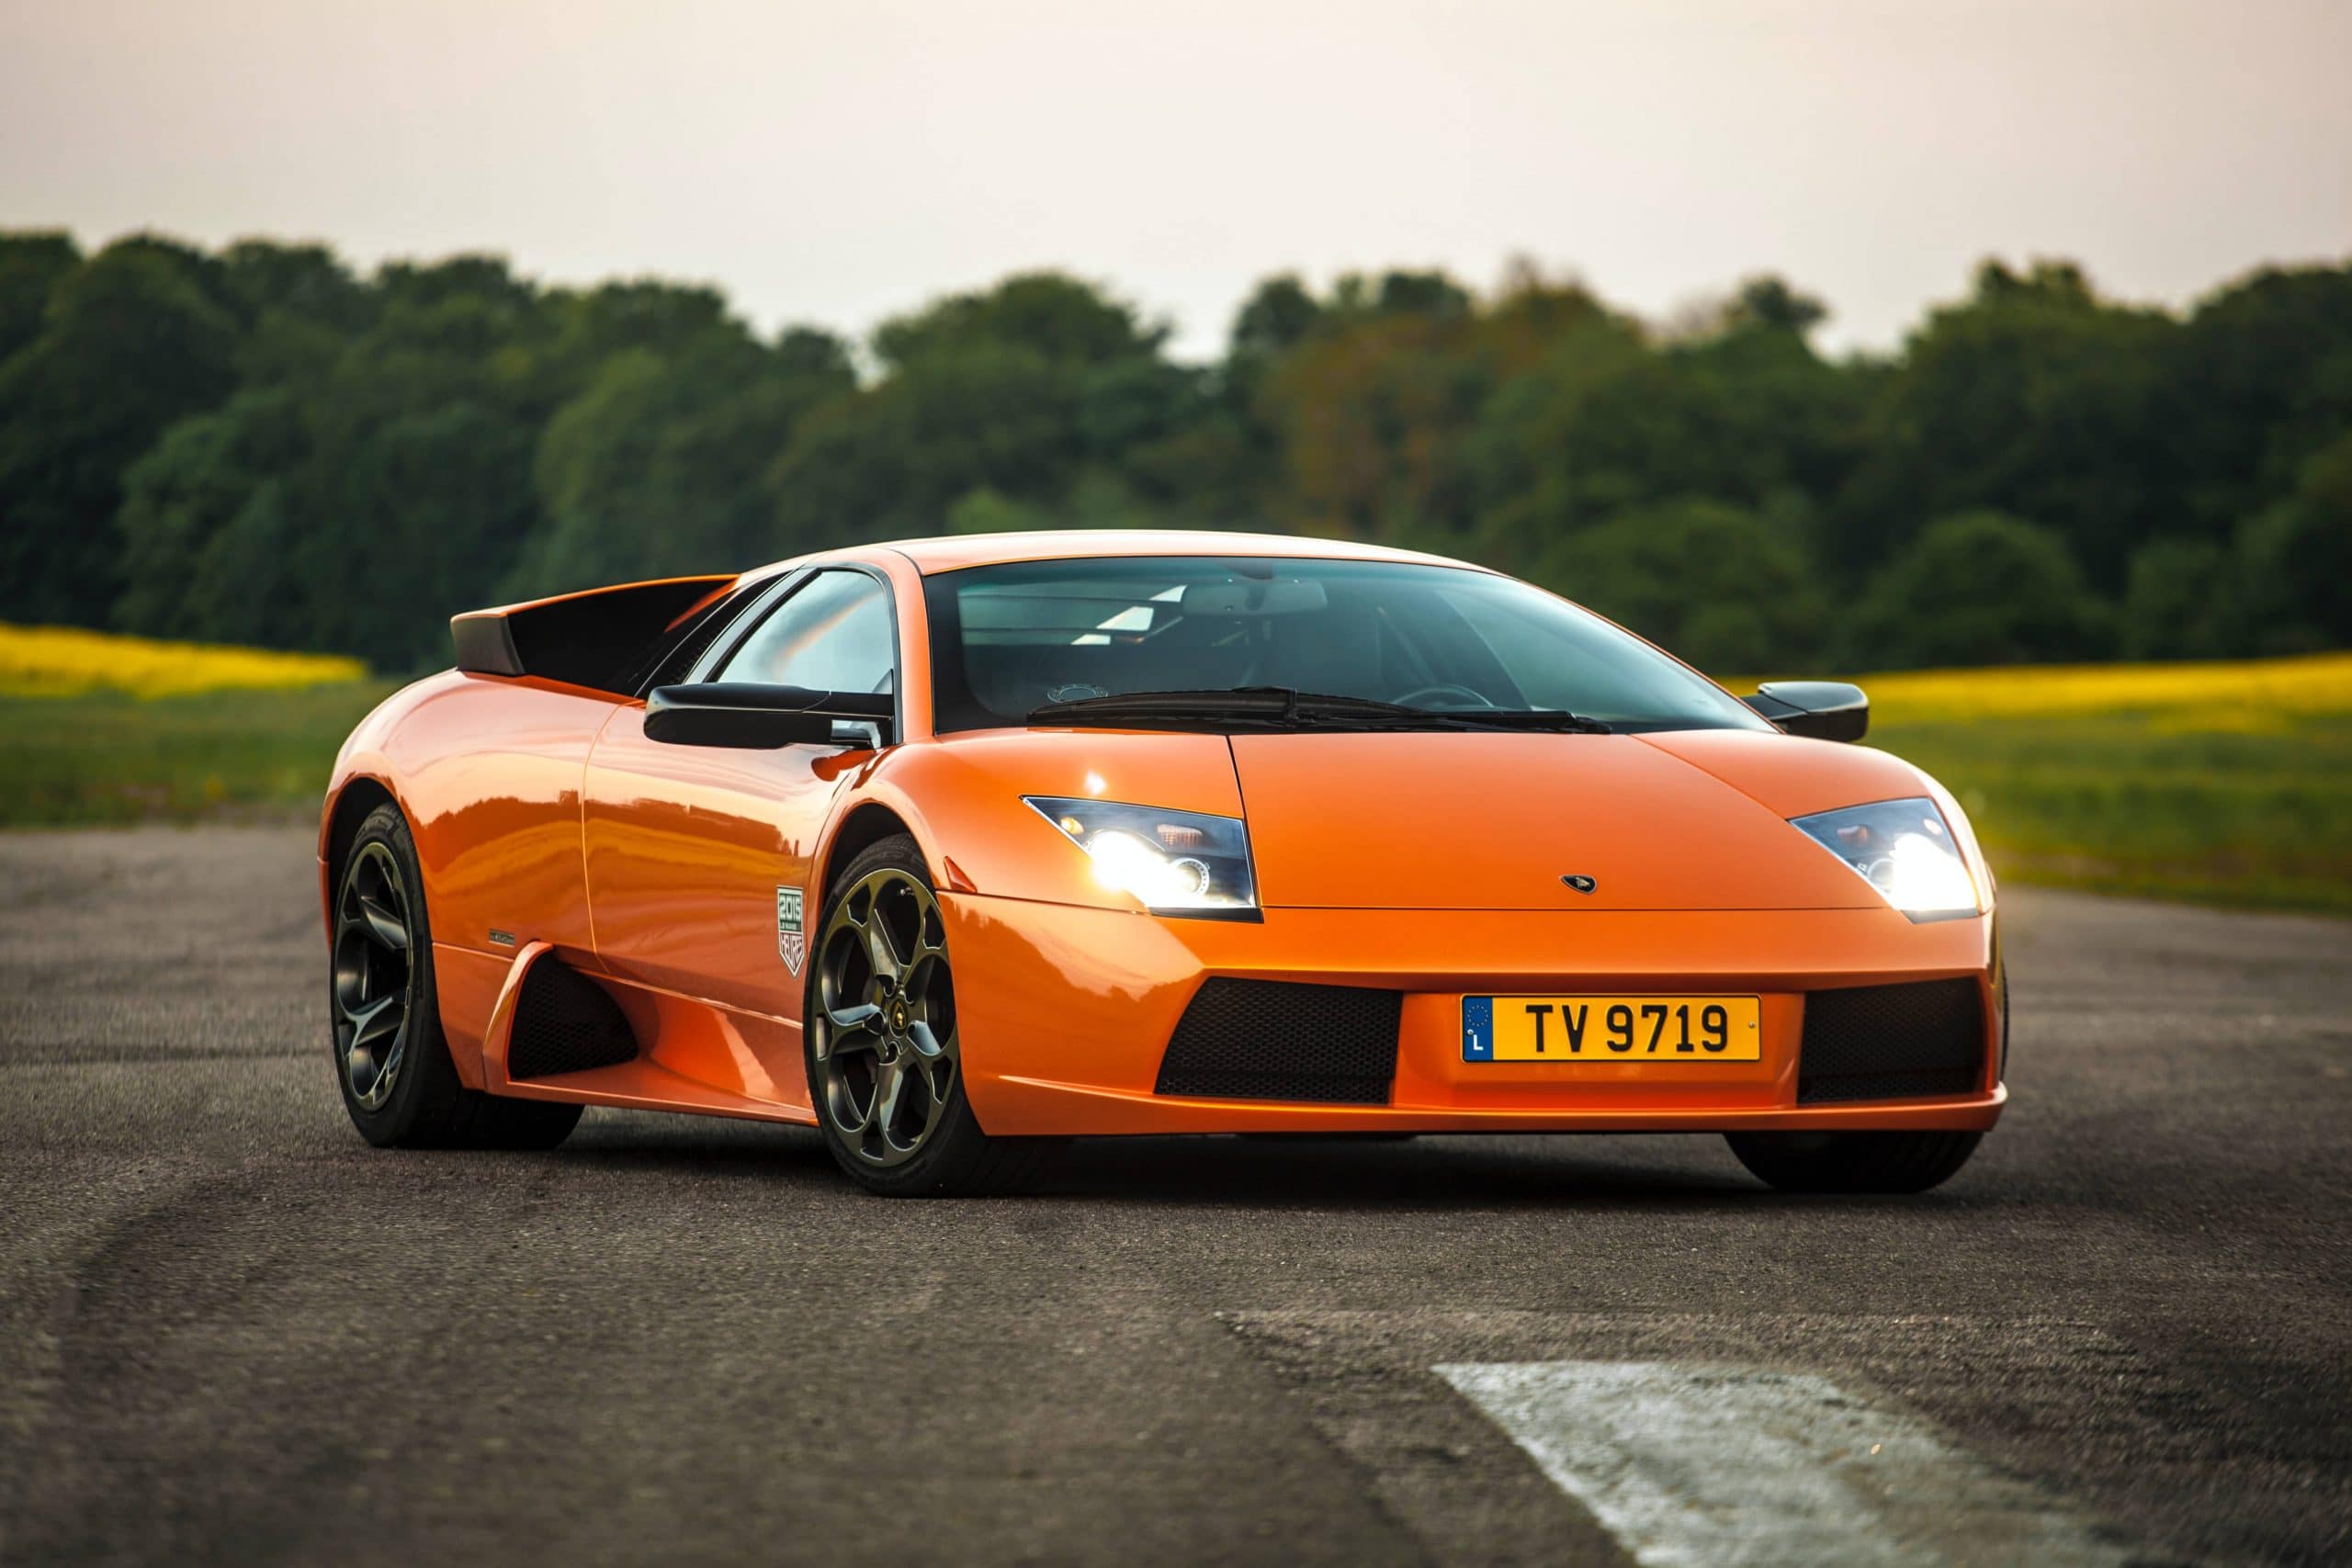 Lamborghini : Modèles de voitures et Histoire